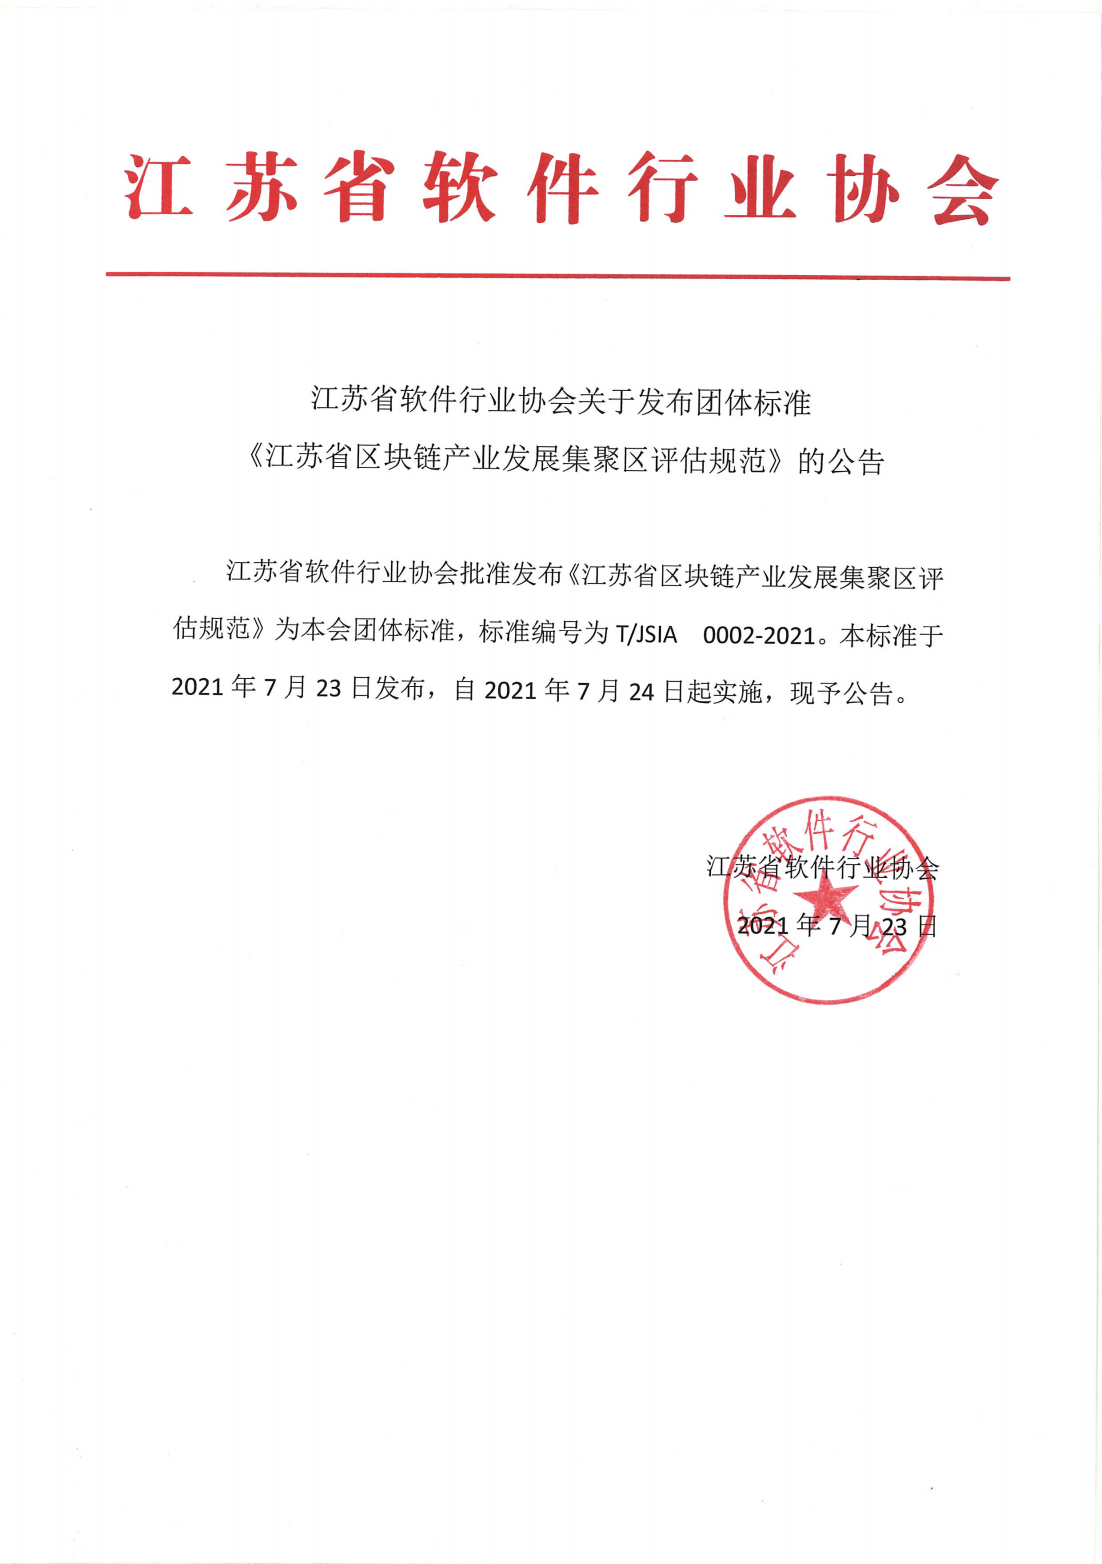 标准发布公告-江苏省区块链产业发展集聚区评估规范_00.png